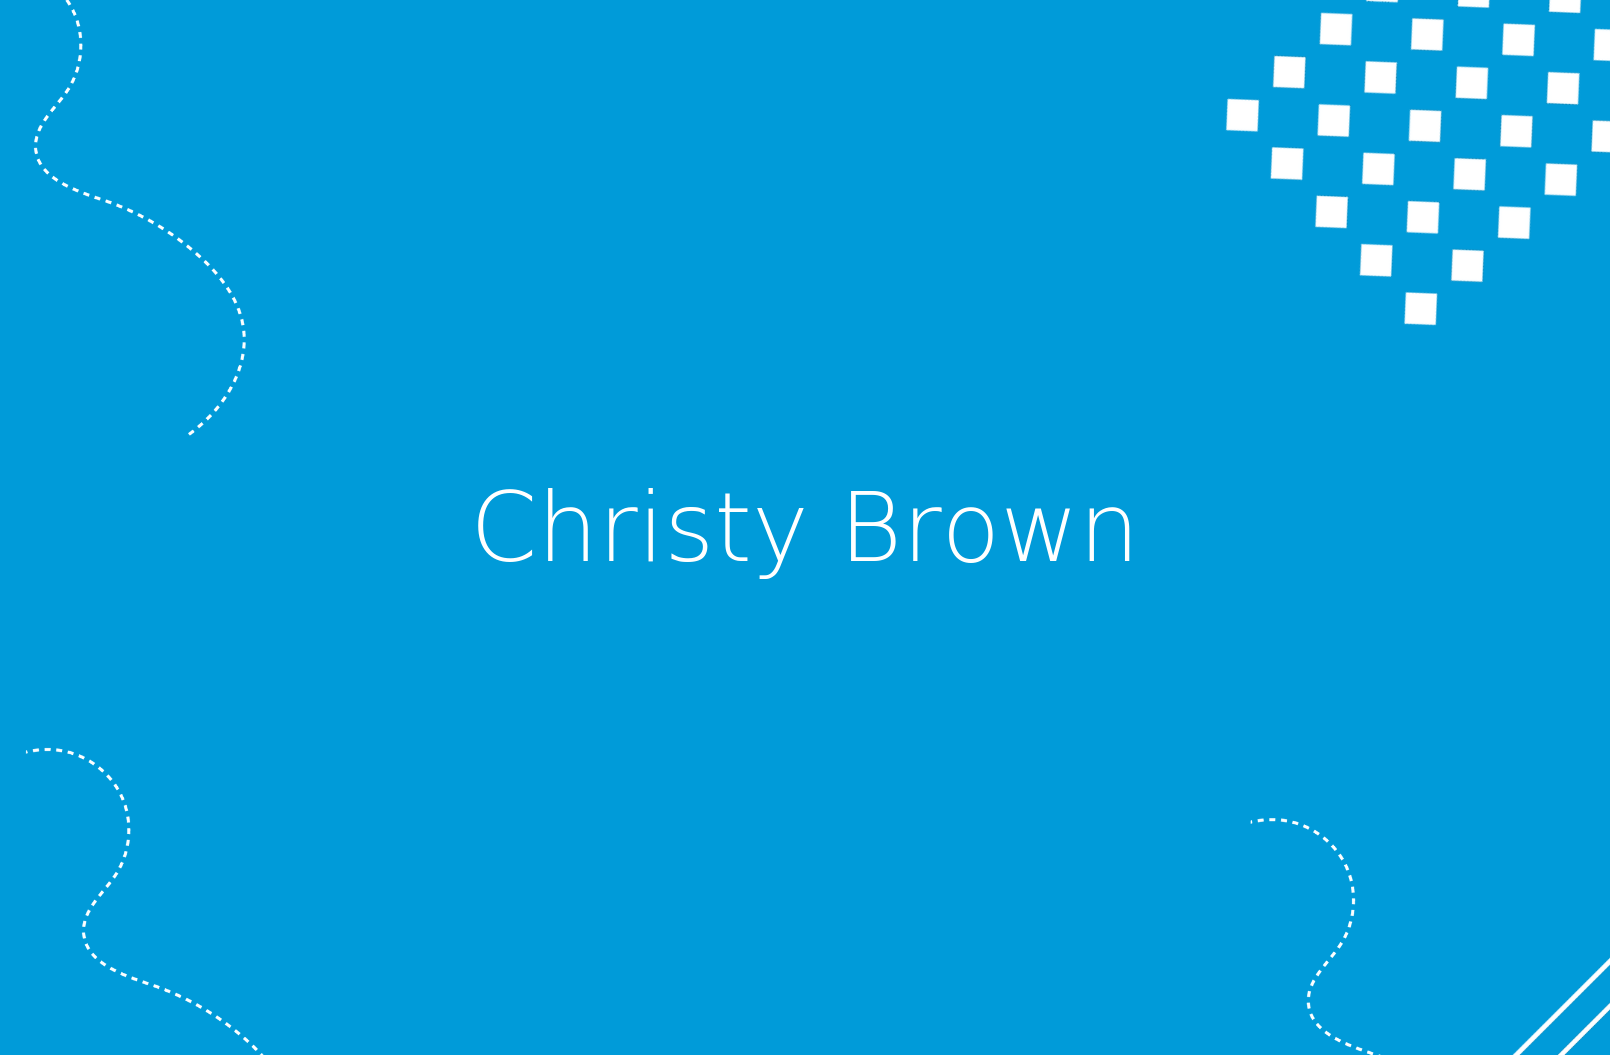 La biografía de Christy Brown